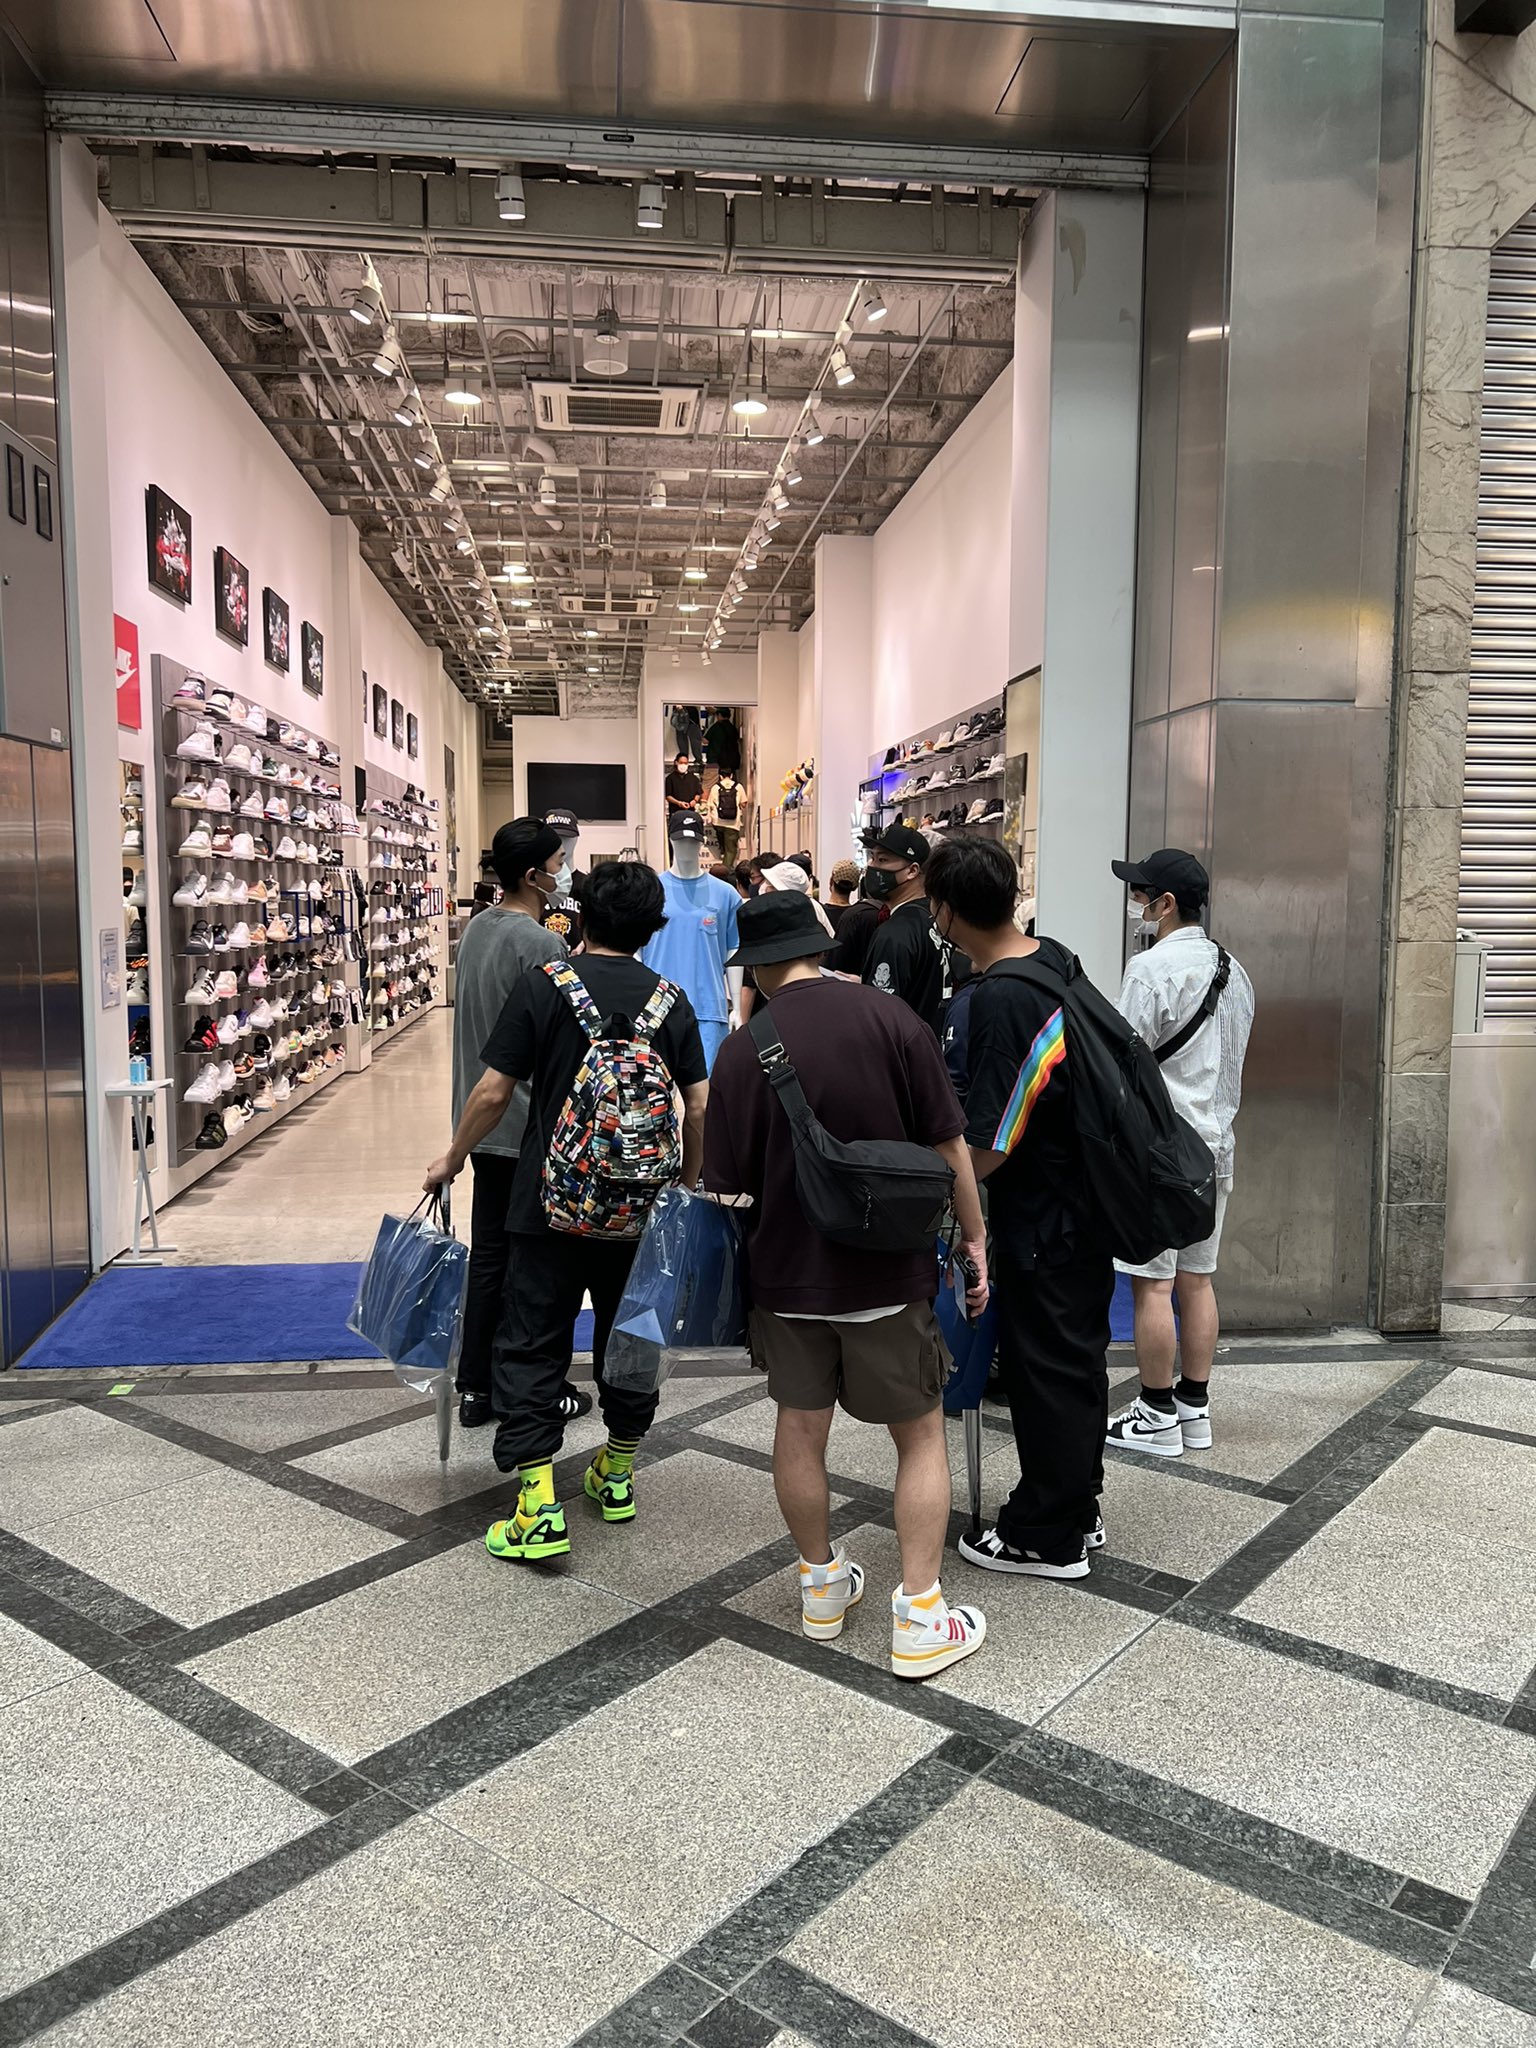 Shoe Life 今日は アディダス会を大阪の心斎橋 で行った 青のアディマティックと発売日を同じである為か 多くに人に来ていただいた 昔 6ヶ月前 とは大きく違い 若者含めアディダスを履いている人ばかり 逆に人が多くお客様と距離が広がる しかし